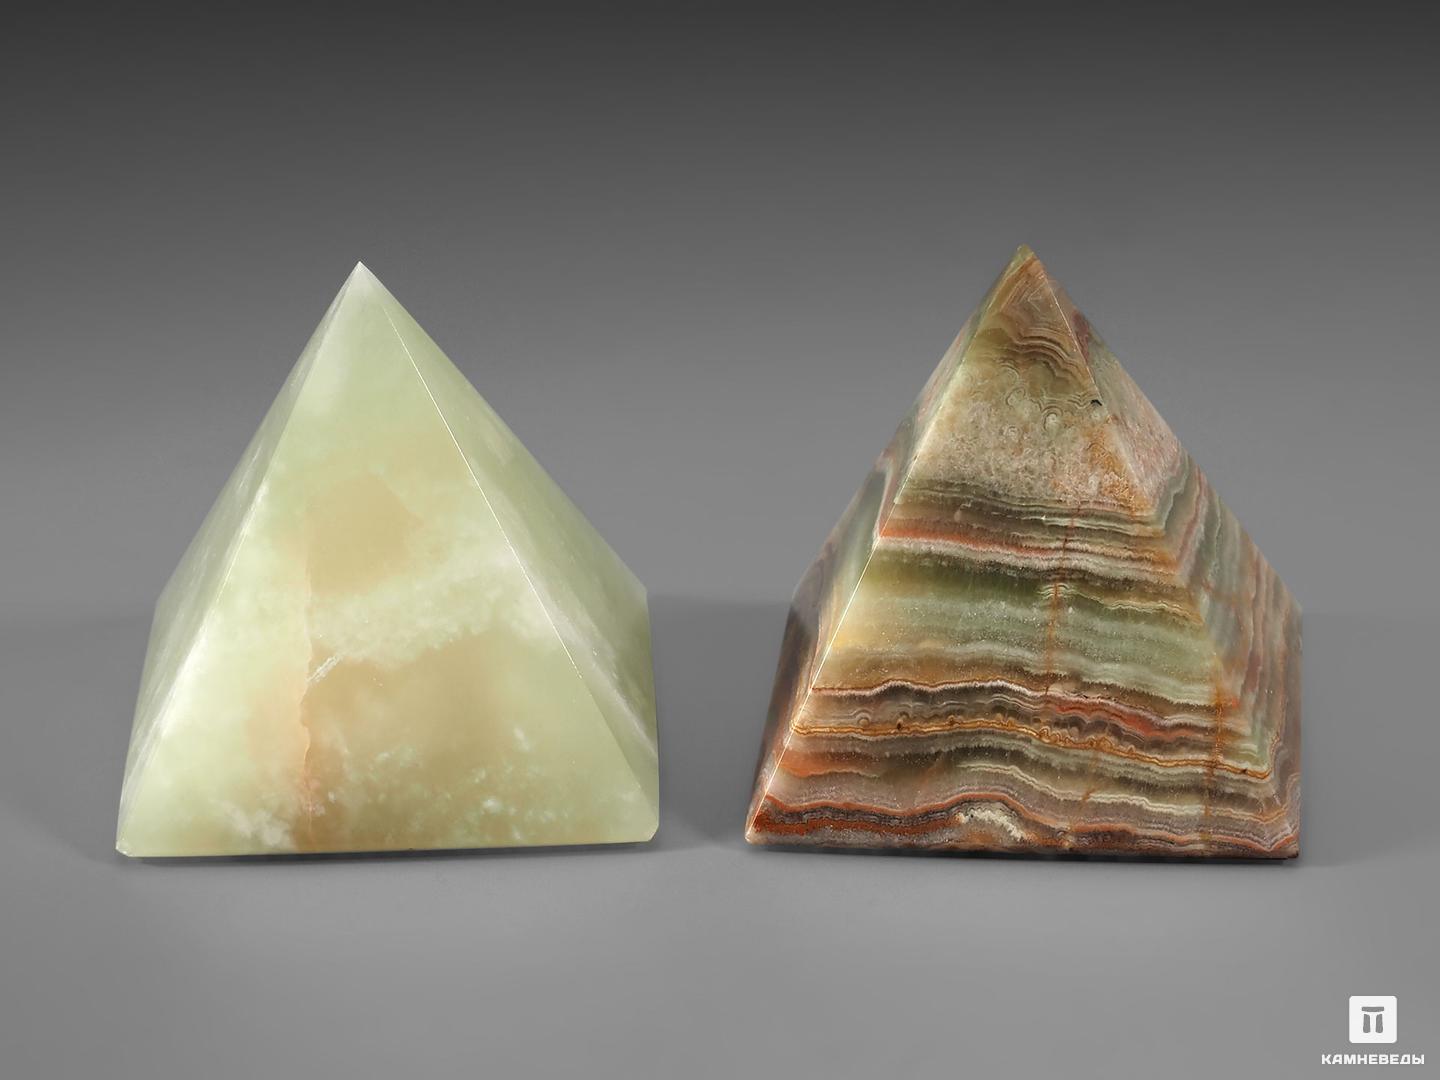 Пирамида из мраморного оникса, 6х6 см, 20-55/2, фото 2